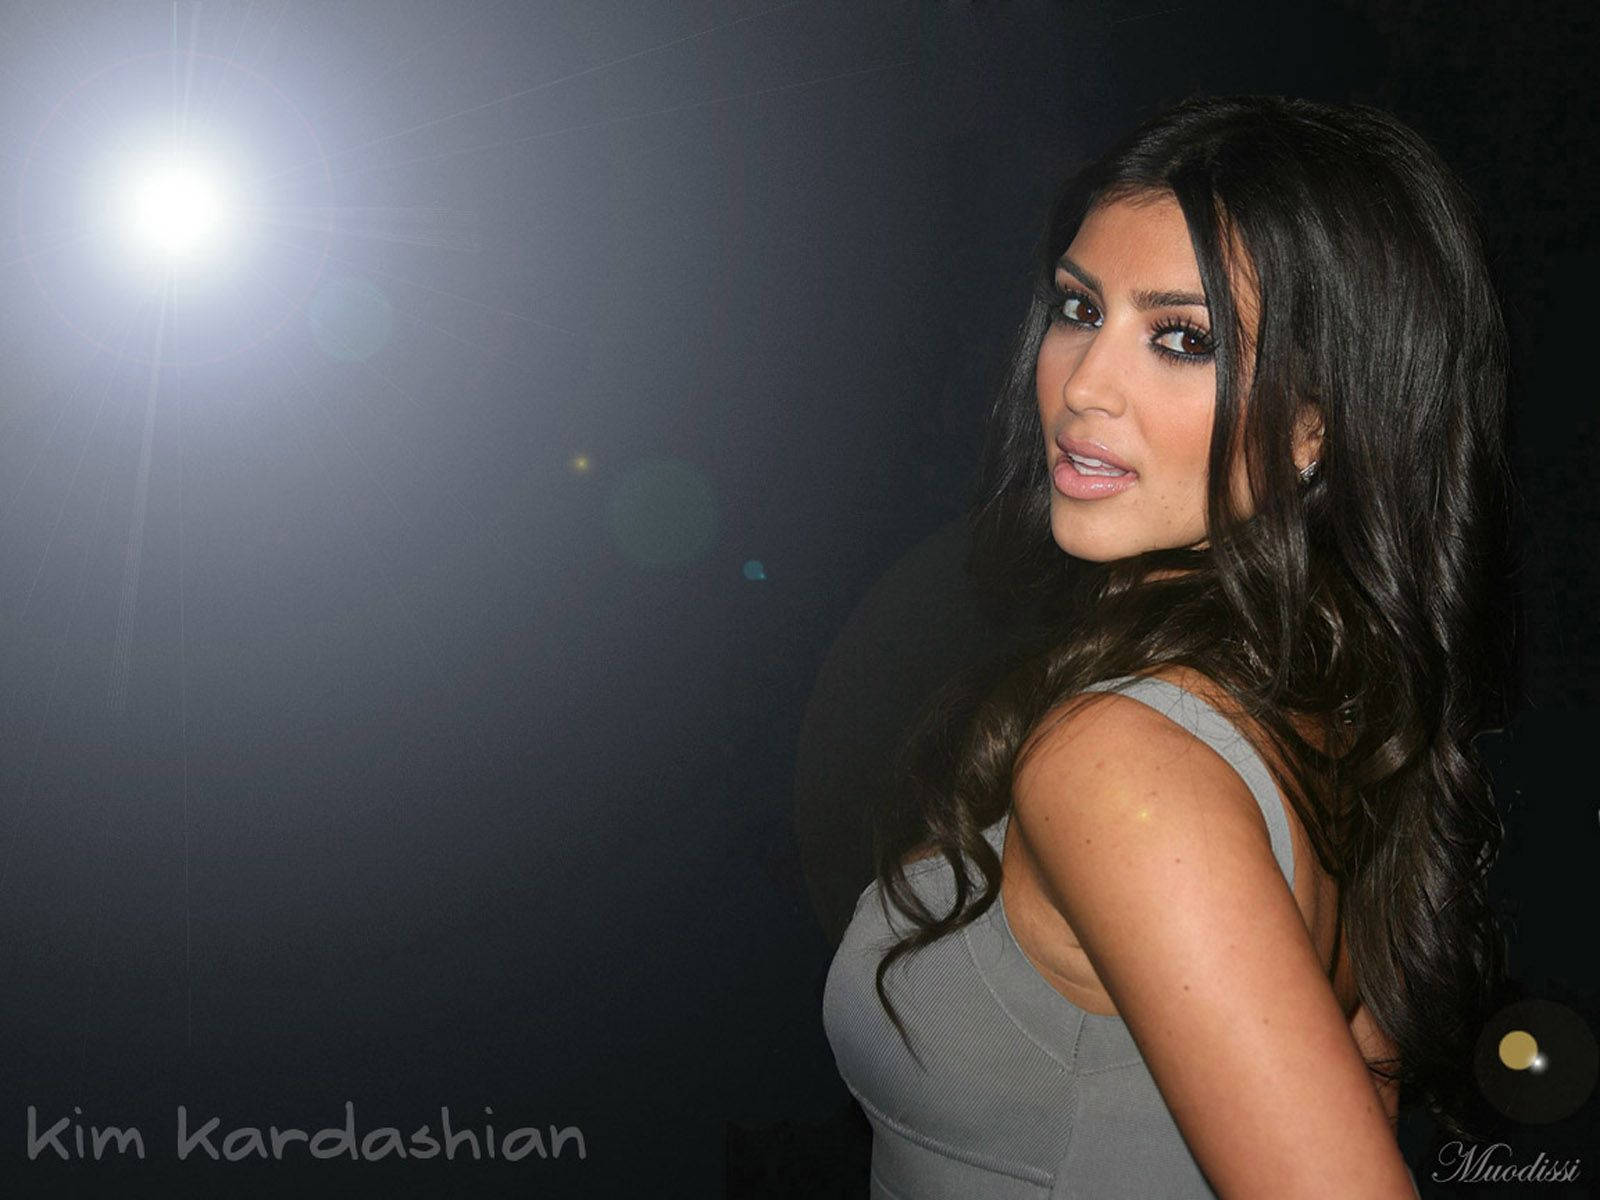 Young Kim Kardashian Portrait